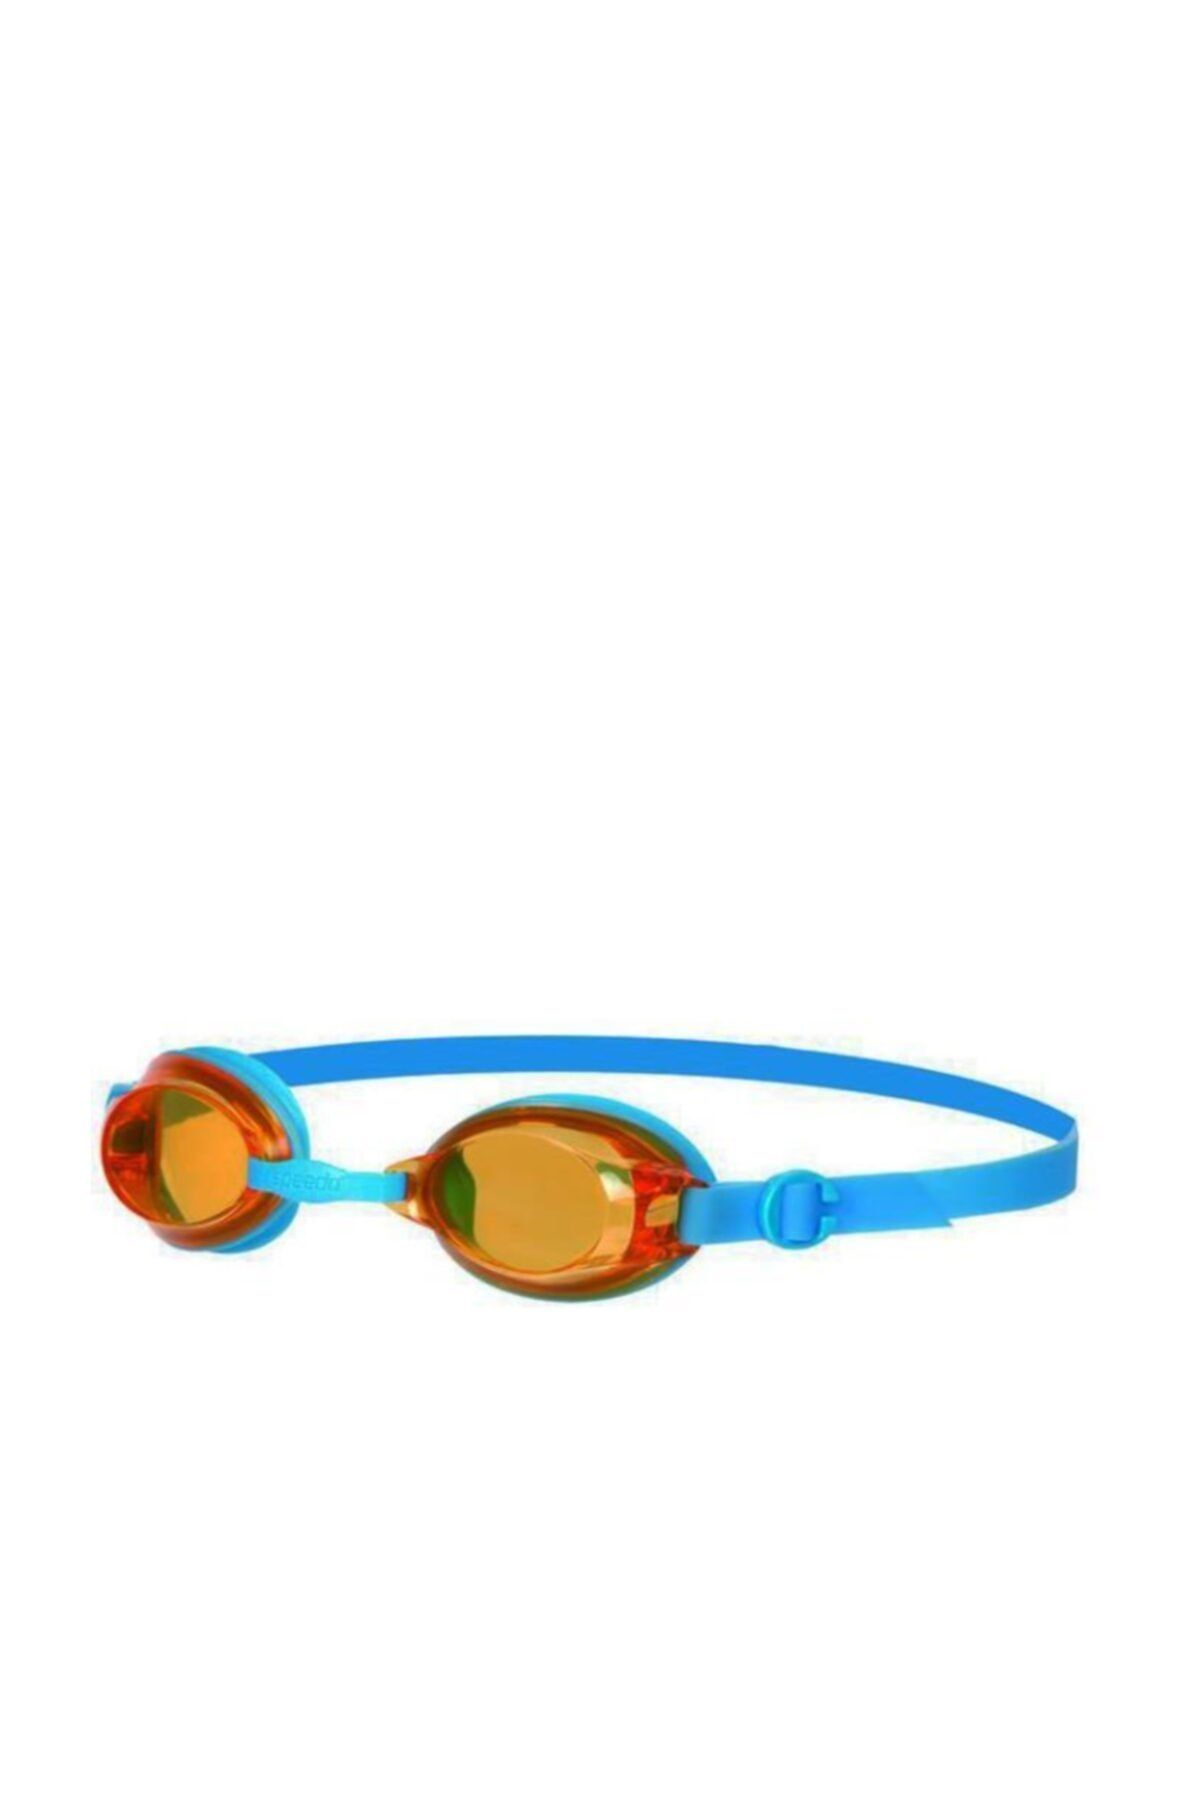 SPEEDO Jet Junior Yüzücü Gözlüğü Mavi-turuncu (8-092988434